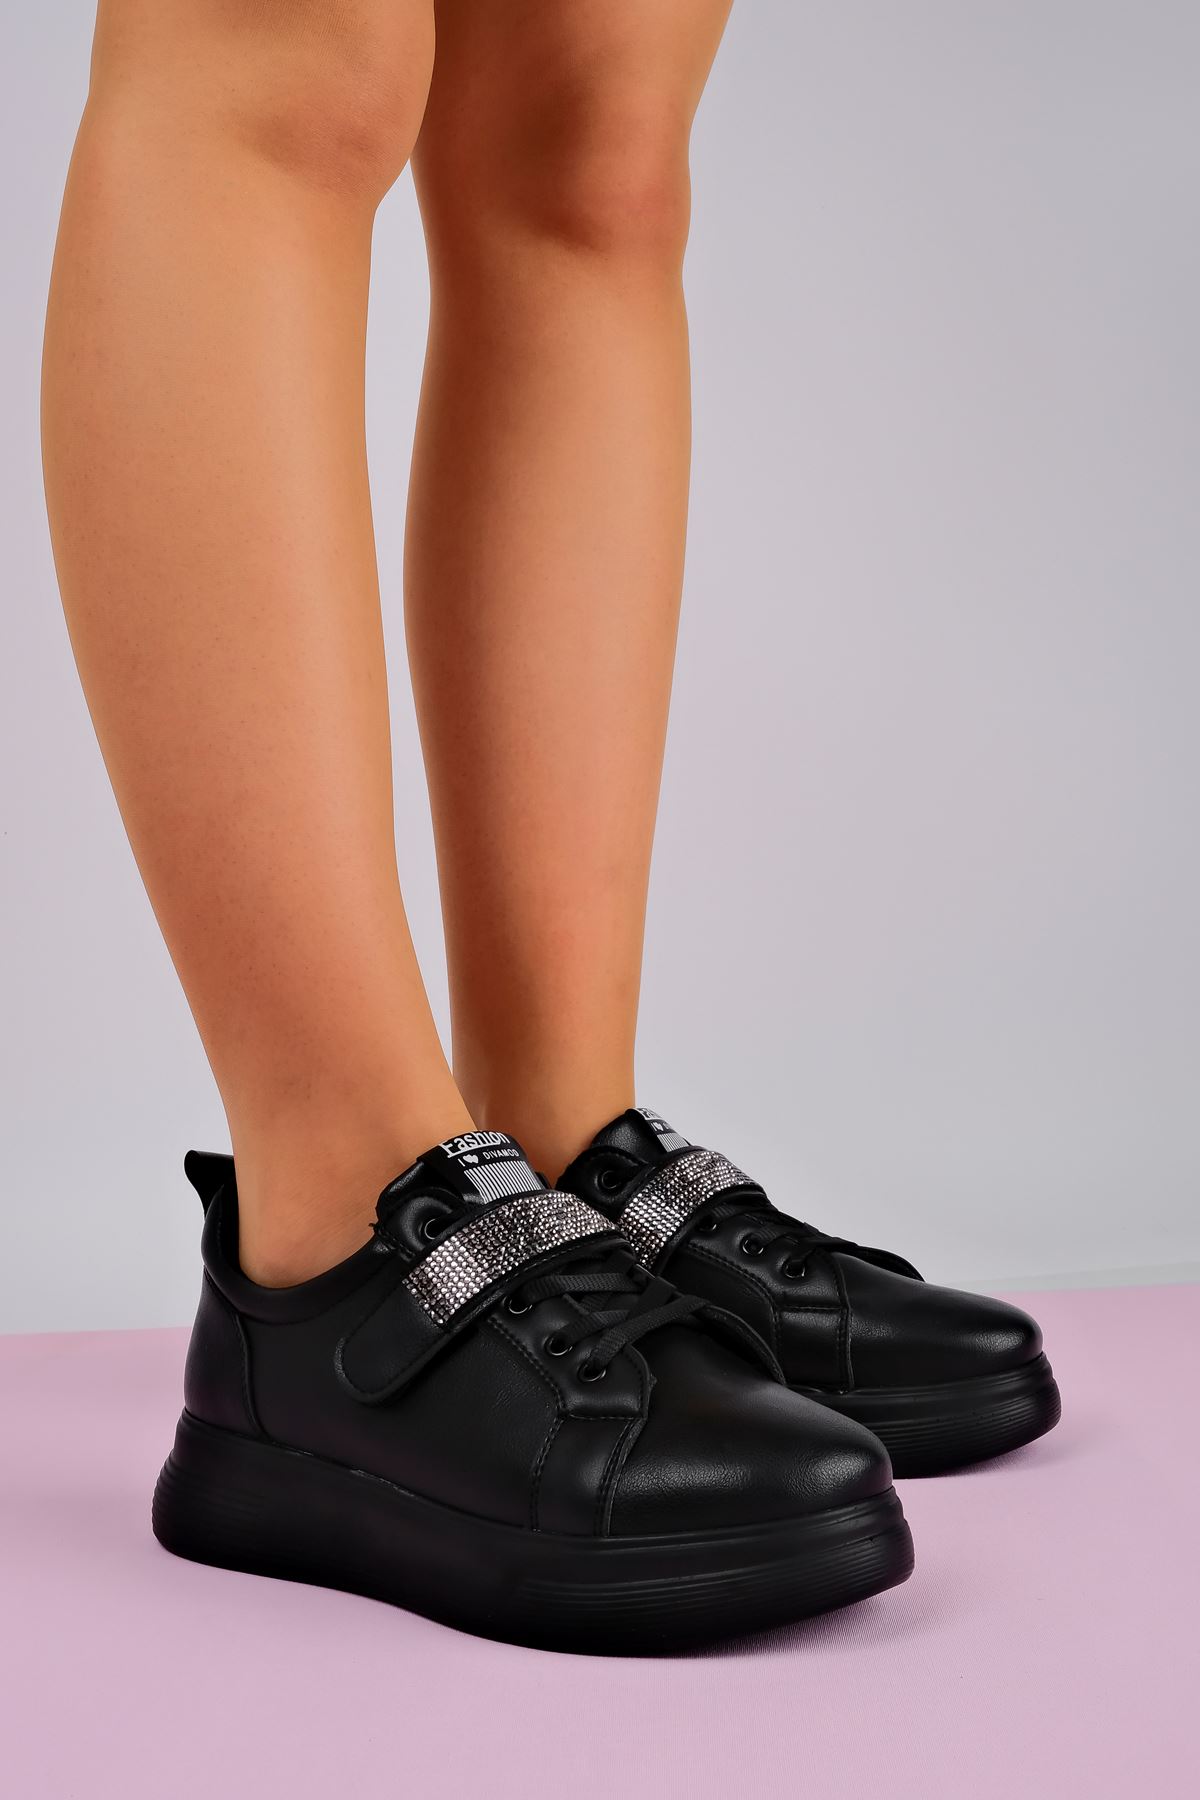 Mila Kadın Spor Ayakkabı Bant Taşlı-siyah